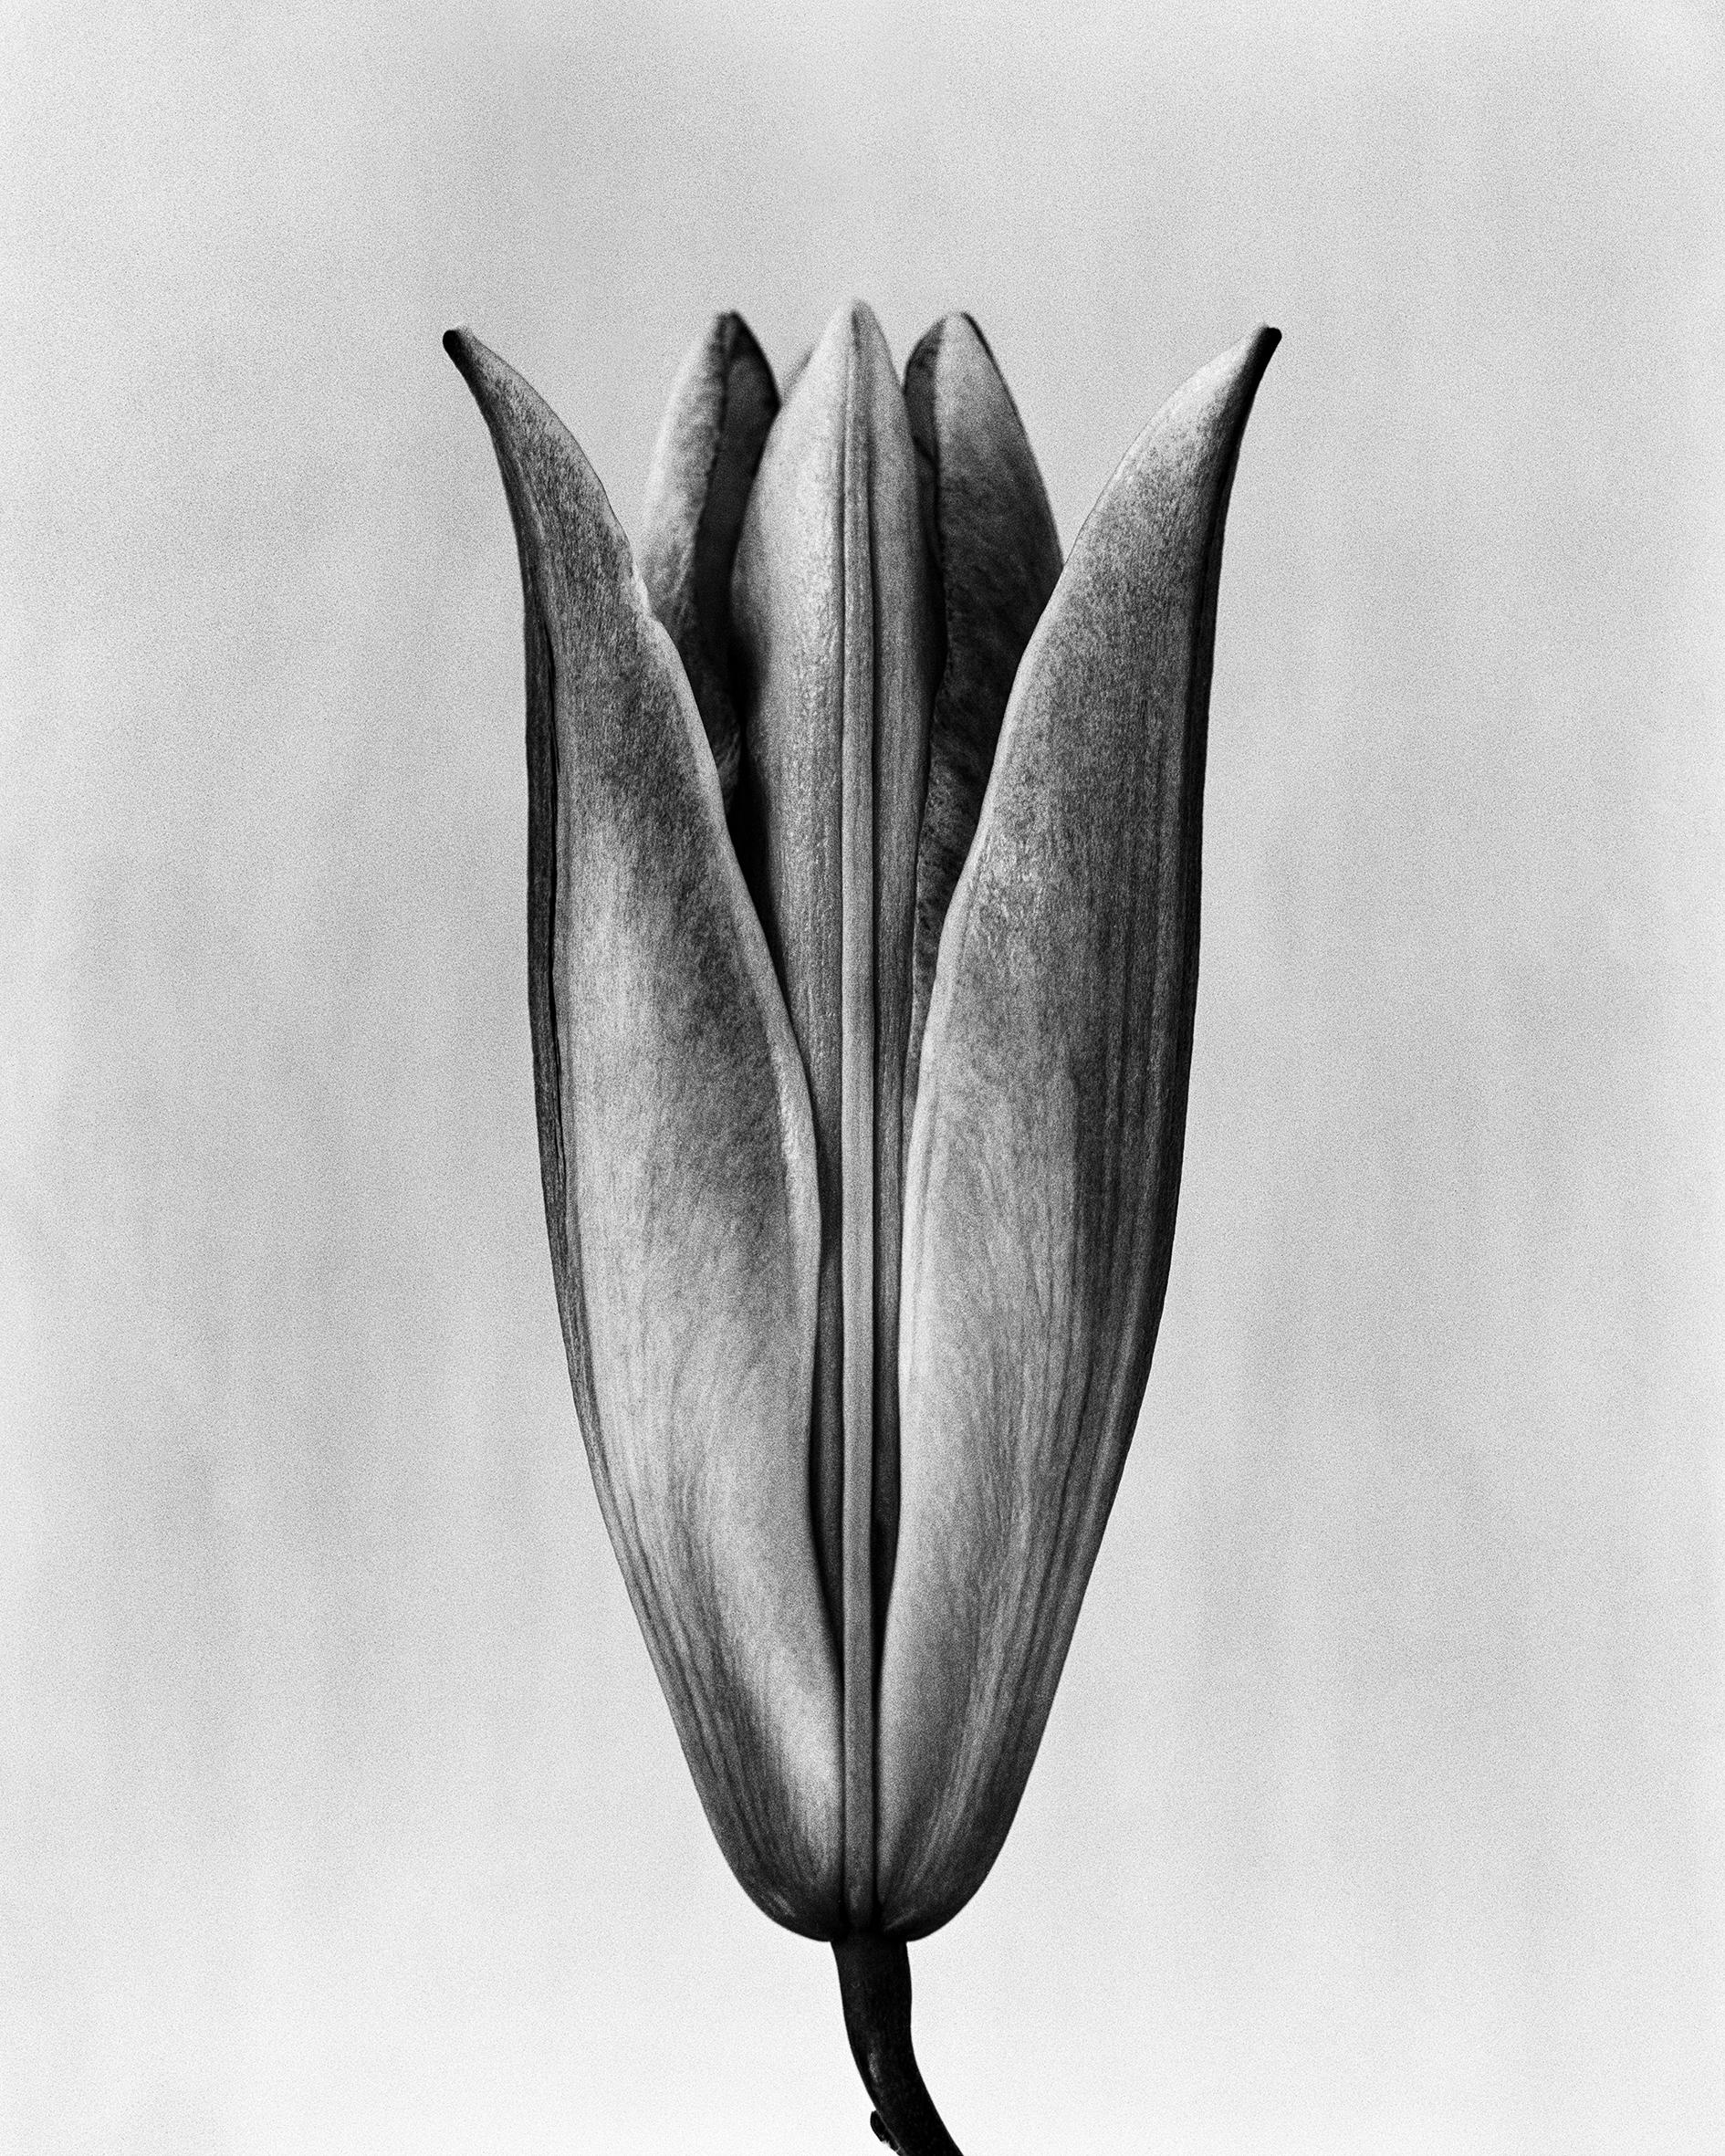 Lily '23 Schwarz-Weiß- analoge Blumenfotografie, Auflage von 15 Stück